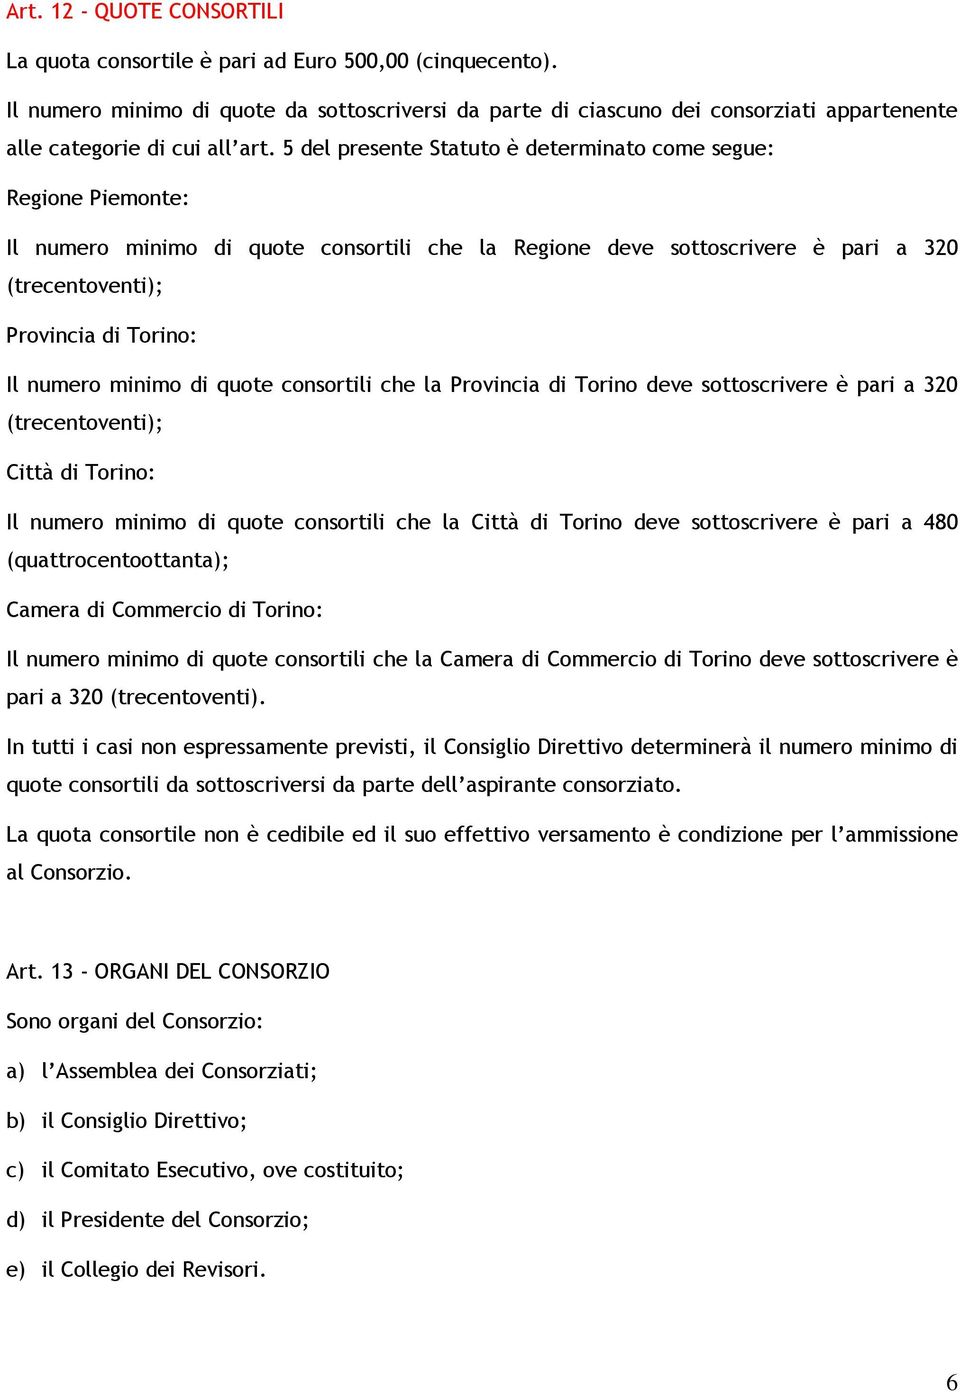 5 del presente Statuto è determinato come segue: Regione Piemonte: Il numero minimo di quote consortili che la Regione deve sottoscrivere è pari a 320 (trecentoventi); Provincia di Torino: Il numero